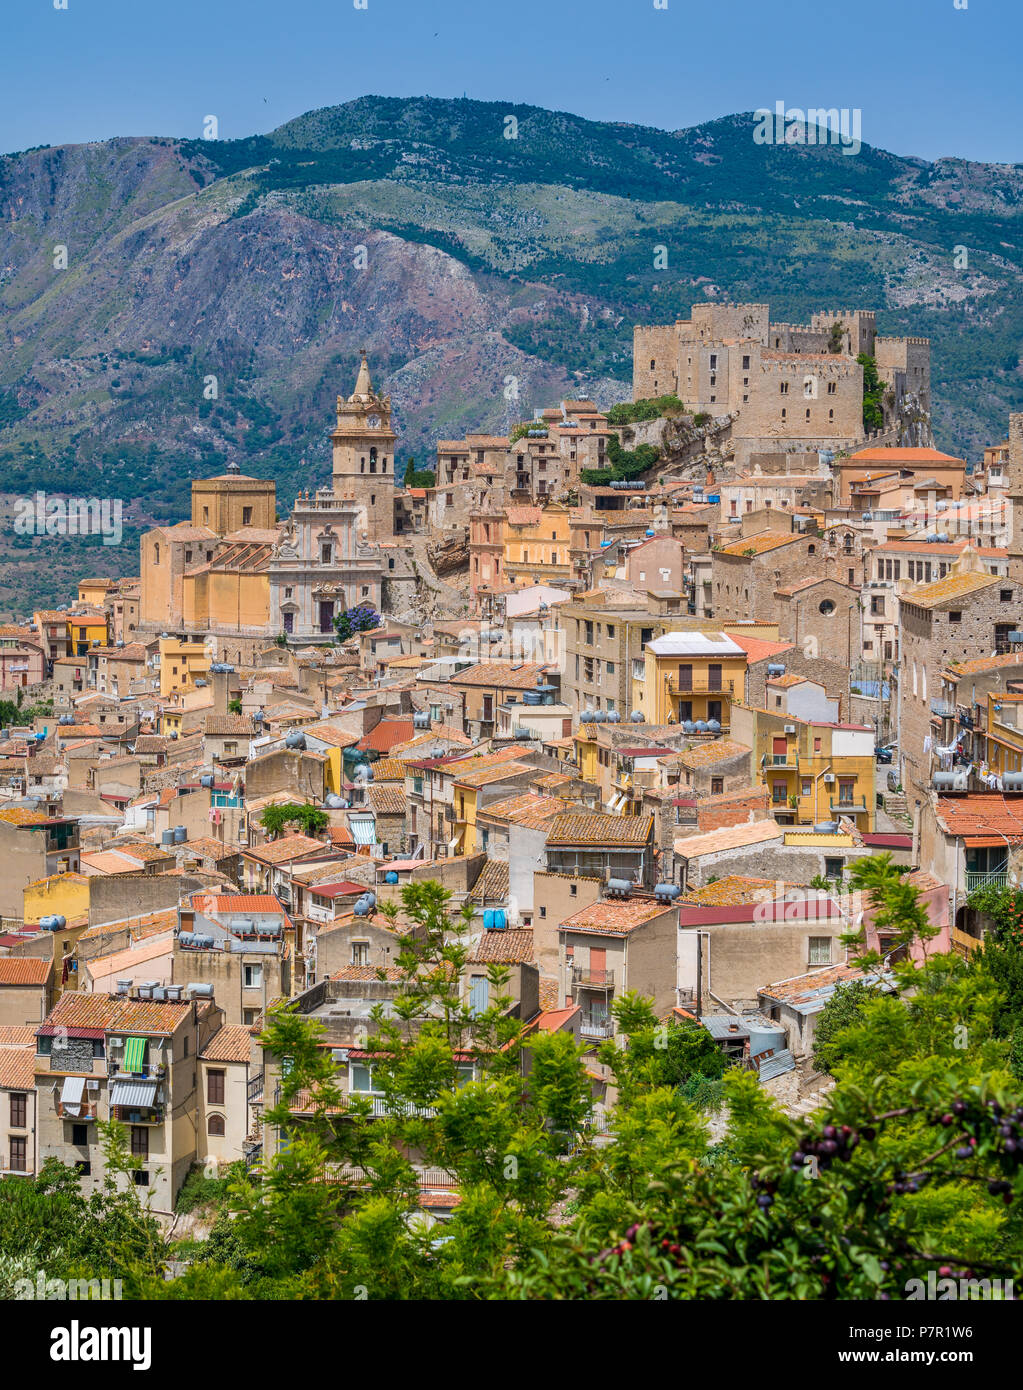 Vista panoramica di Caccamo, splendida cittadina in provincia di Palermo, in Sicilia. Foto Stock